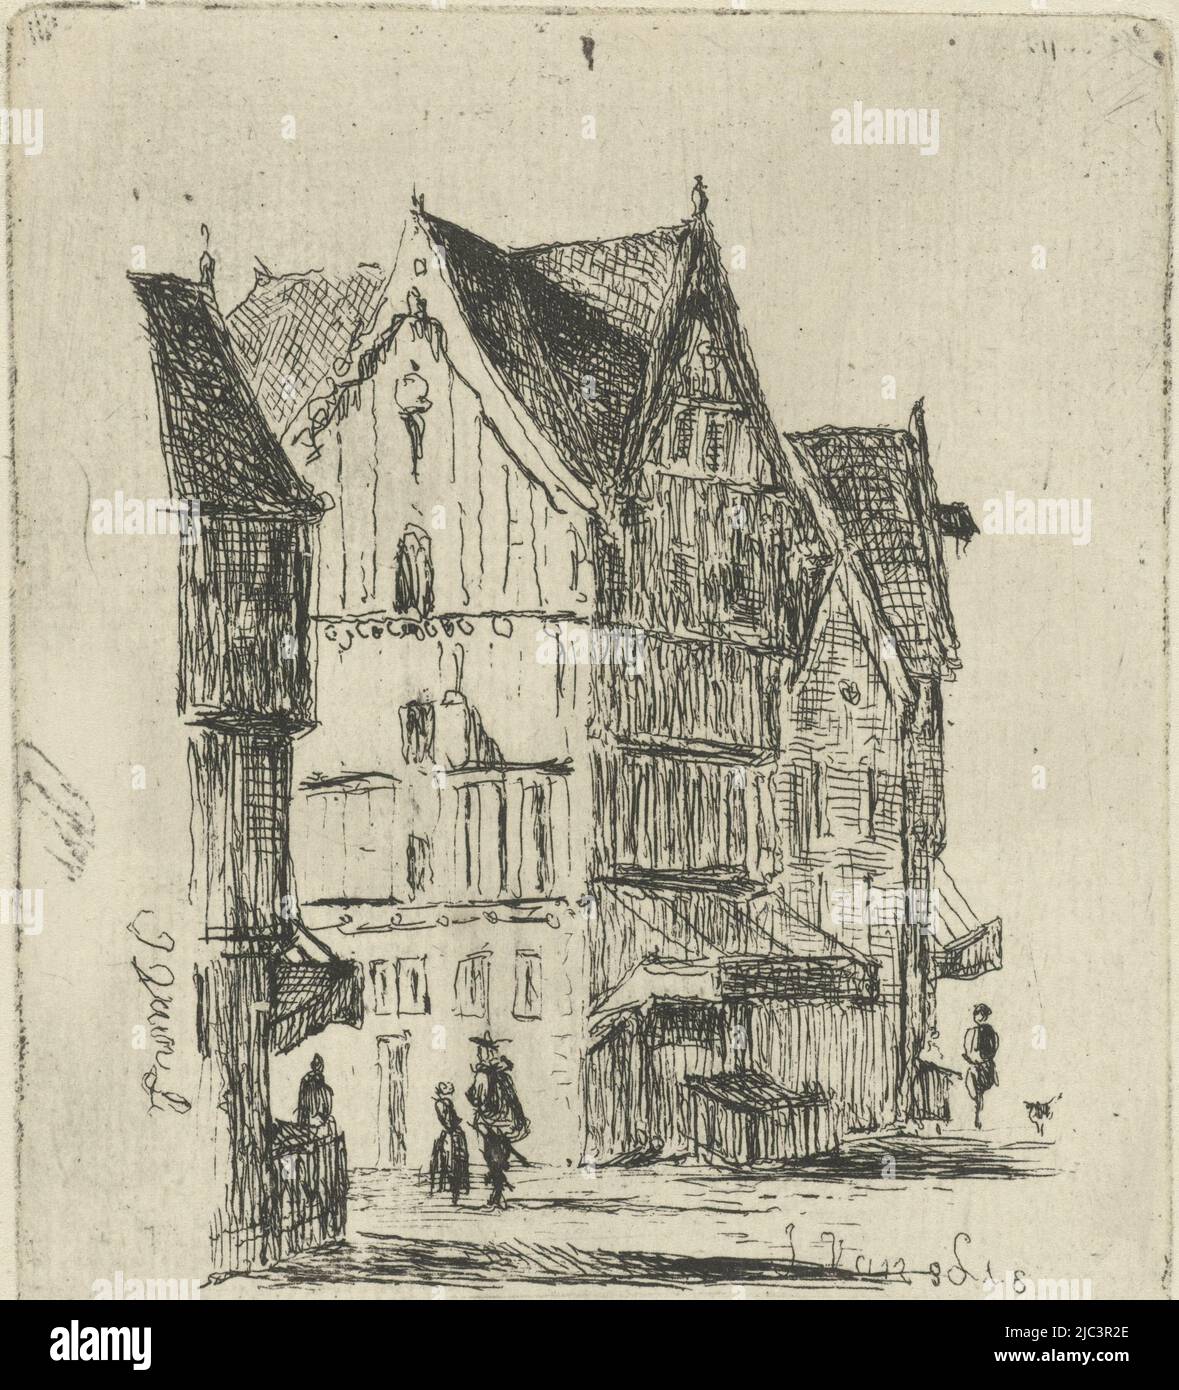 Vista sulla strada con case in legno e alcuni escursionisti, vista sulla strada, tipografo: Joannes van Liefland, (menzionato sull'oggetto), 1819 - 1861, carta, incisione, a 92 mm x l 78 mm Foto Stock